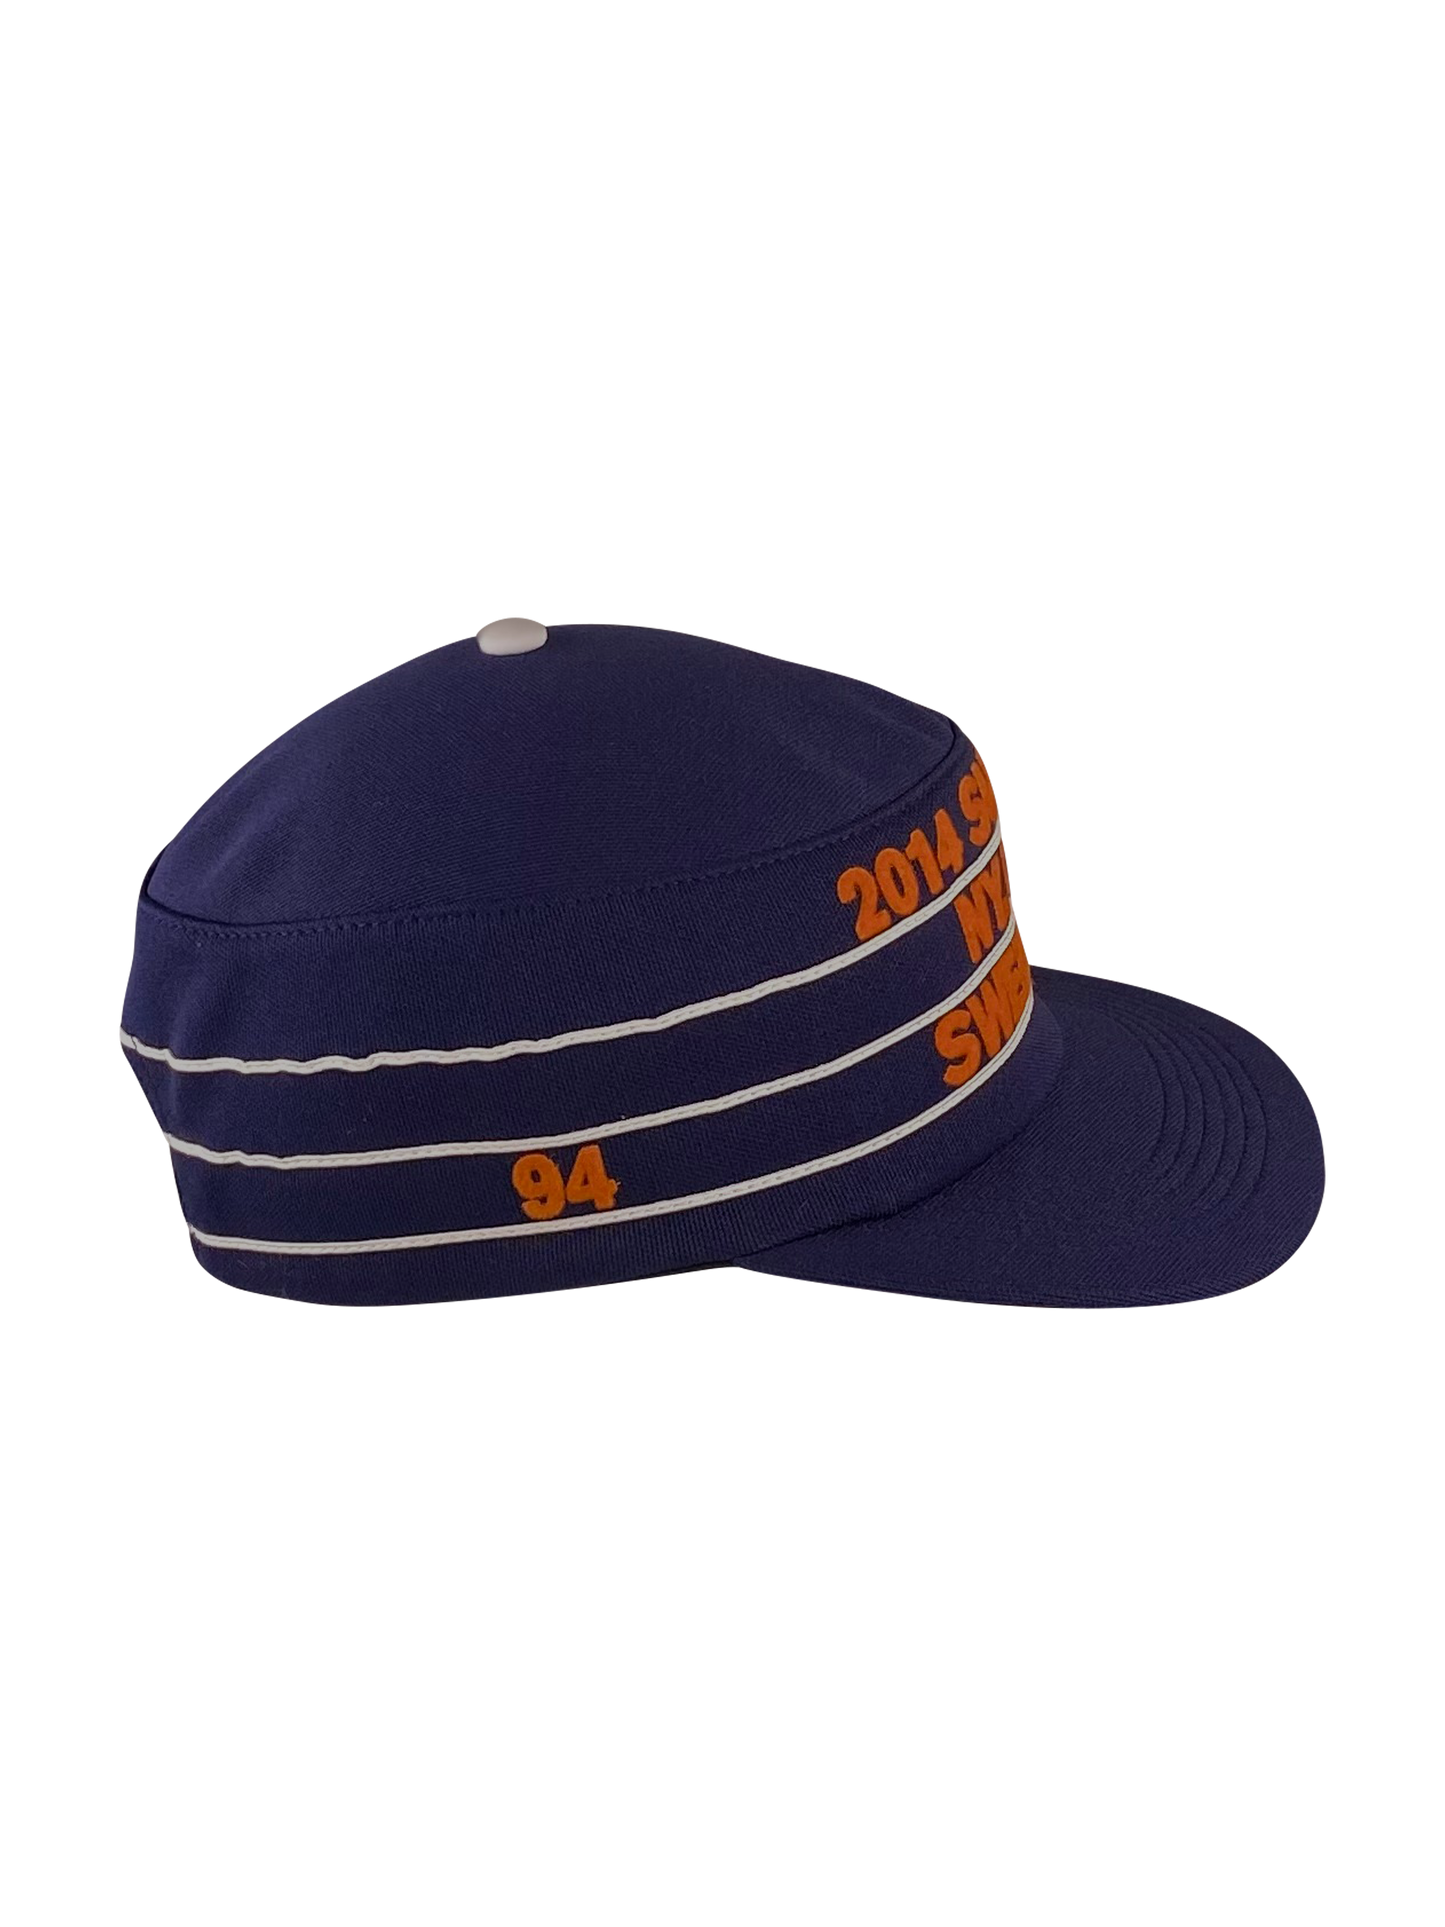 Supreme Cap "Pillbox hat Sweetness" - Blau